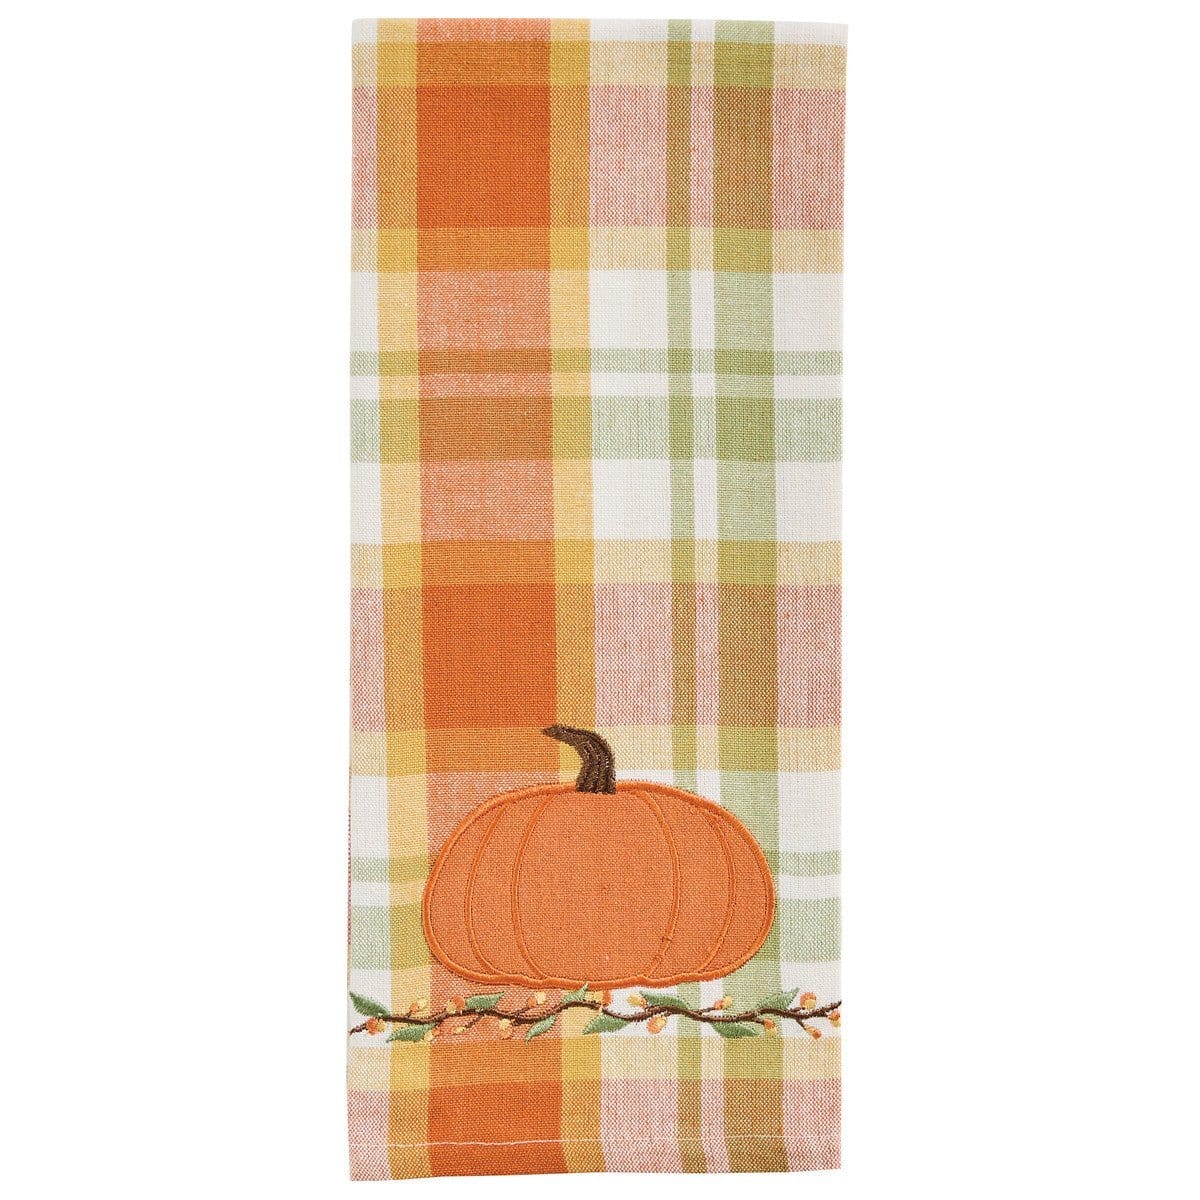 Applique Pumpkin Dishtowel-Park Designs-The Village Merchant